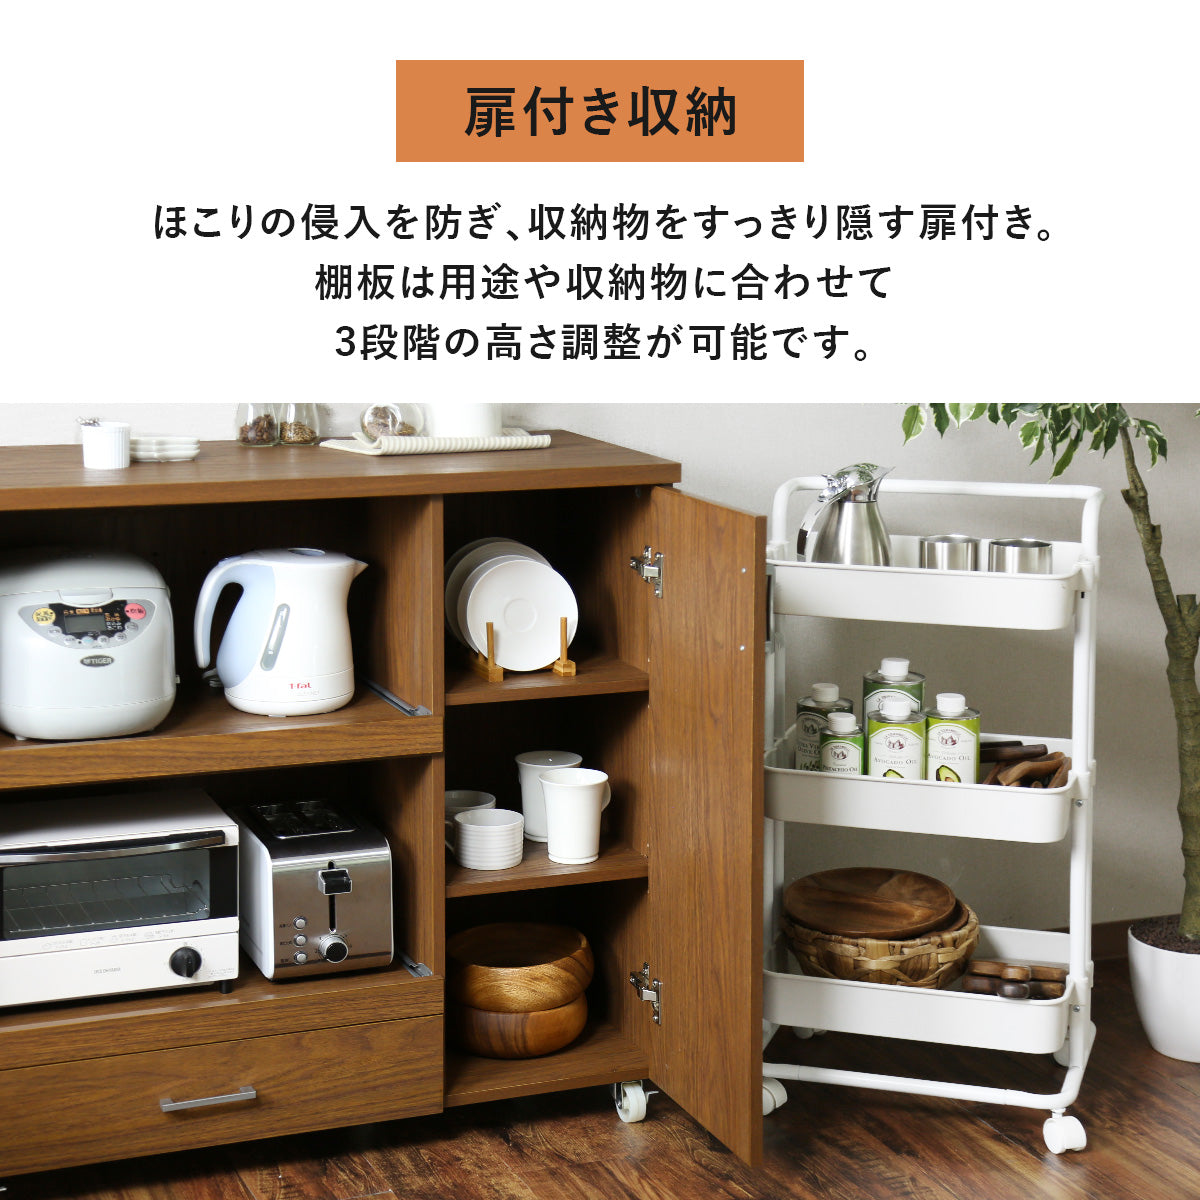 【幅90】 キッチン収納 カイロータイプ90